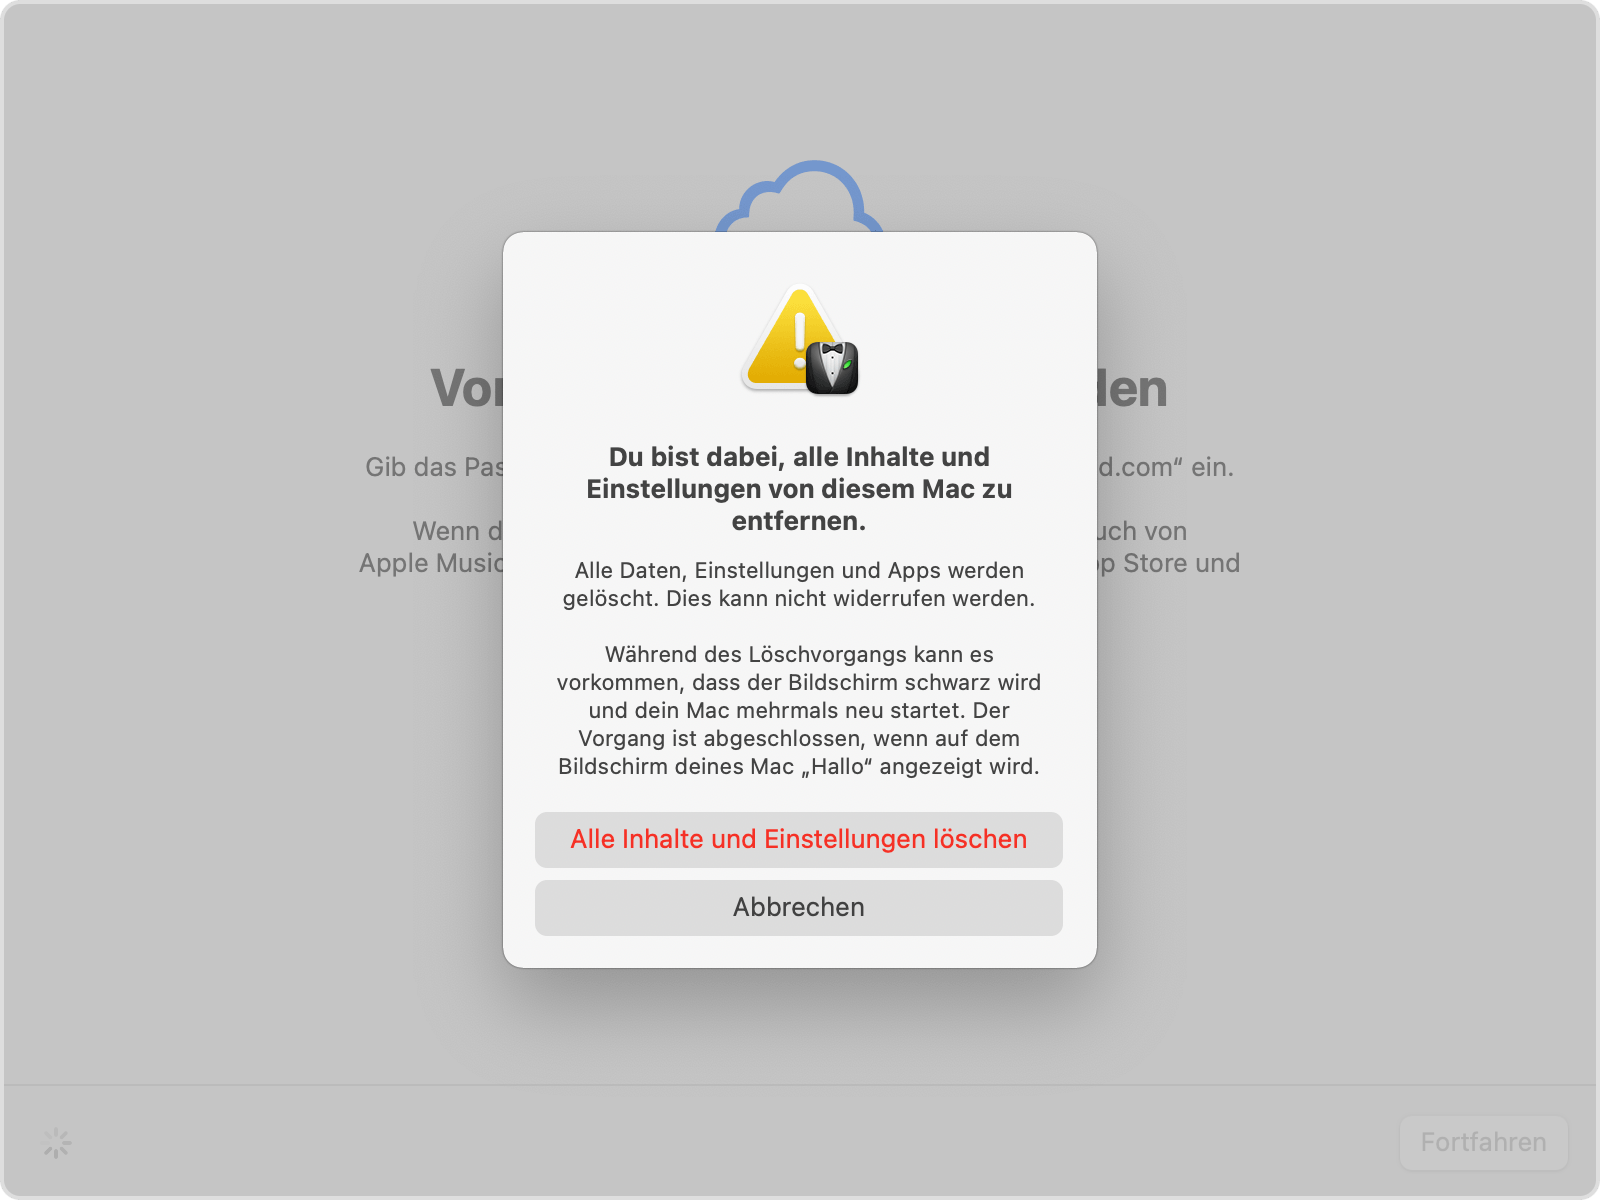 Einblendfenster "Du bist dabei, alle Inhalte und Einstellungen von diesem Mac zu entfernen"